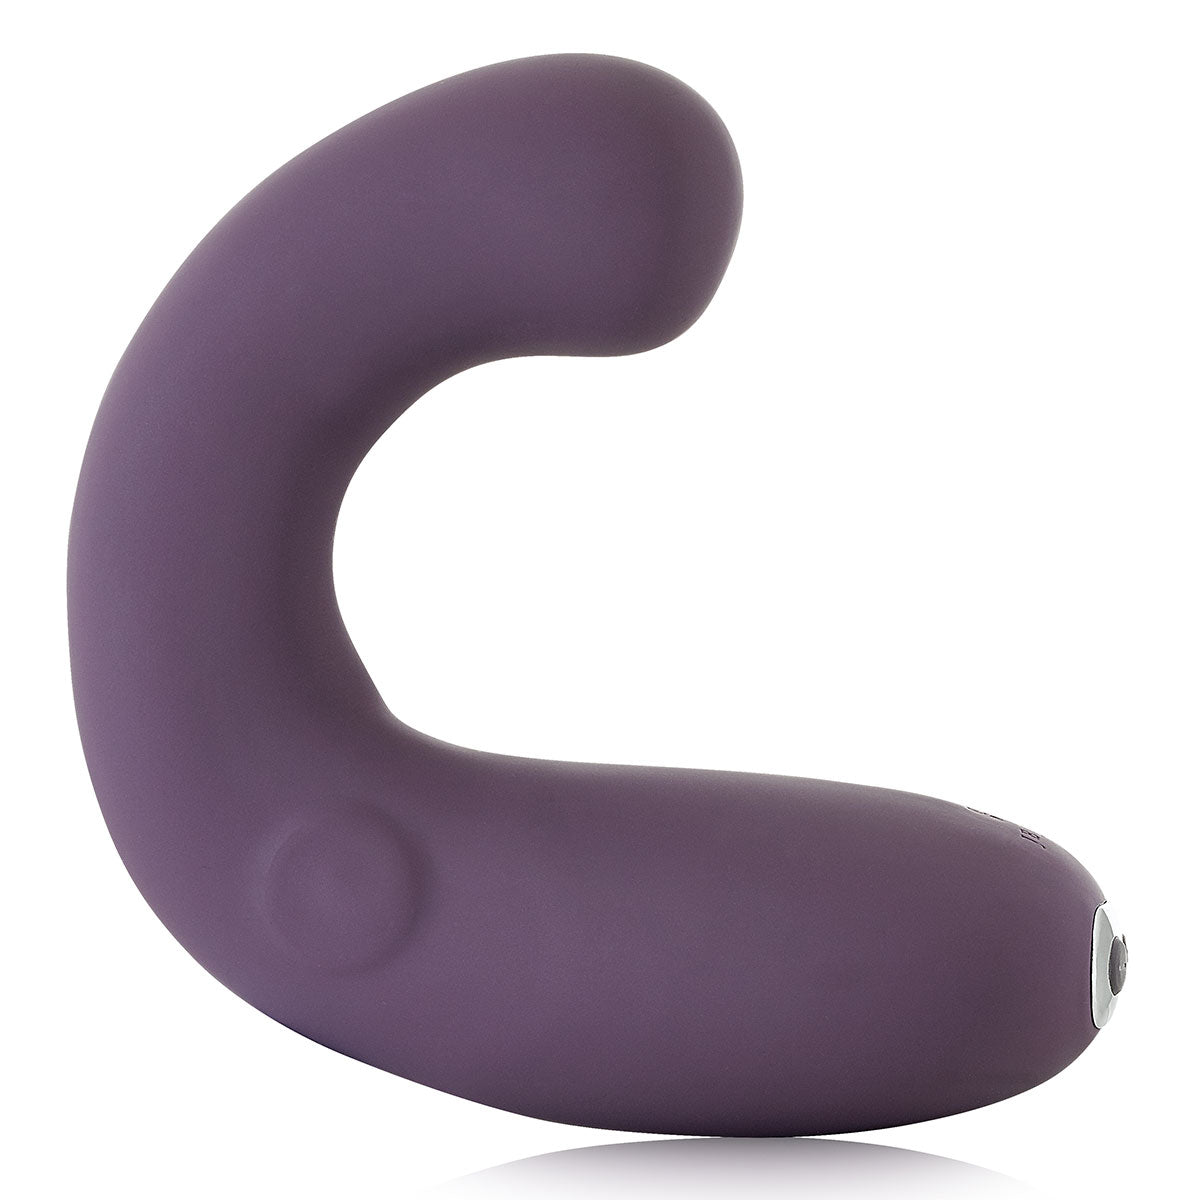 Je Joue G-Kii - Purple G-Spot Vibrator